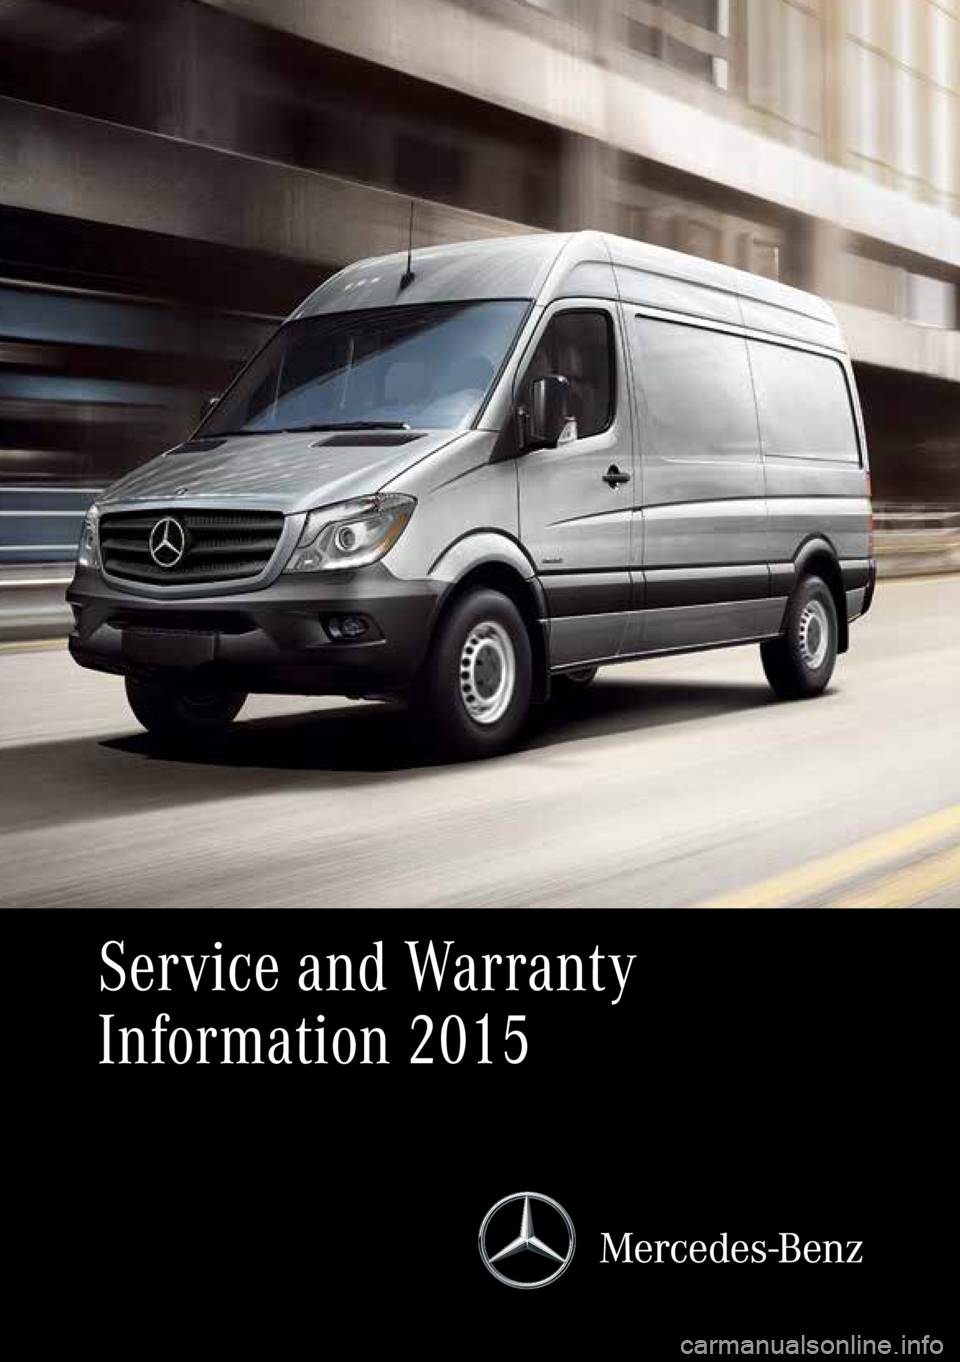 MERCEDES-BENZ SPRINTER 2015  MY15 Service and Warranty Information Service and Warranty 
Information 2015  